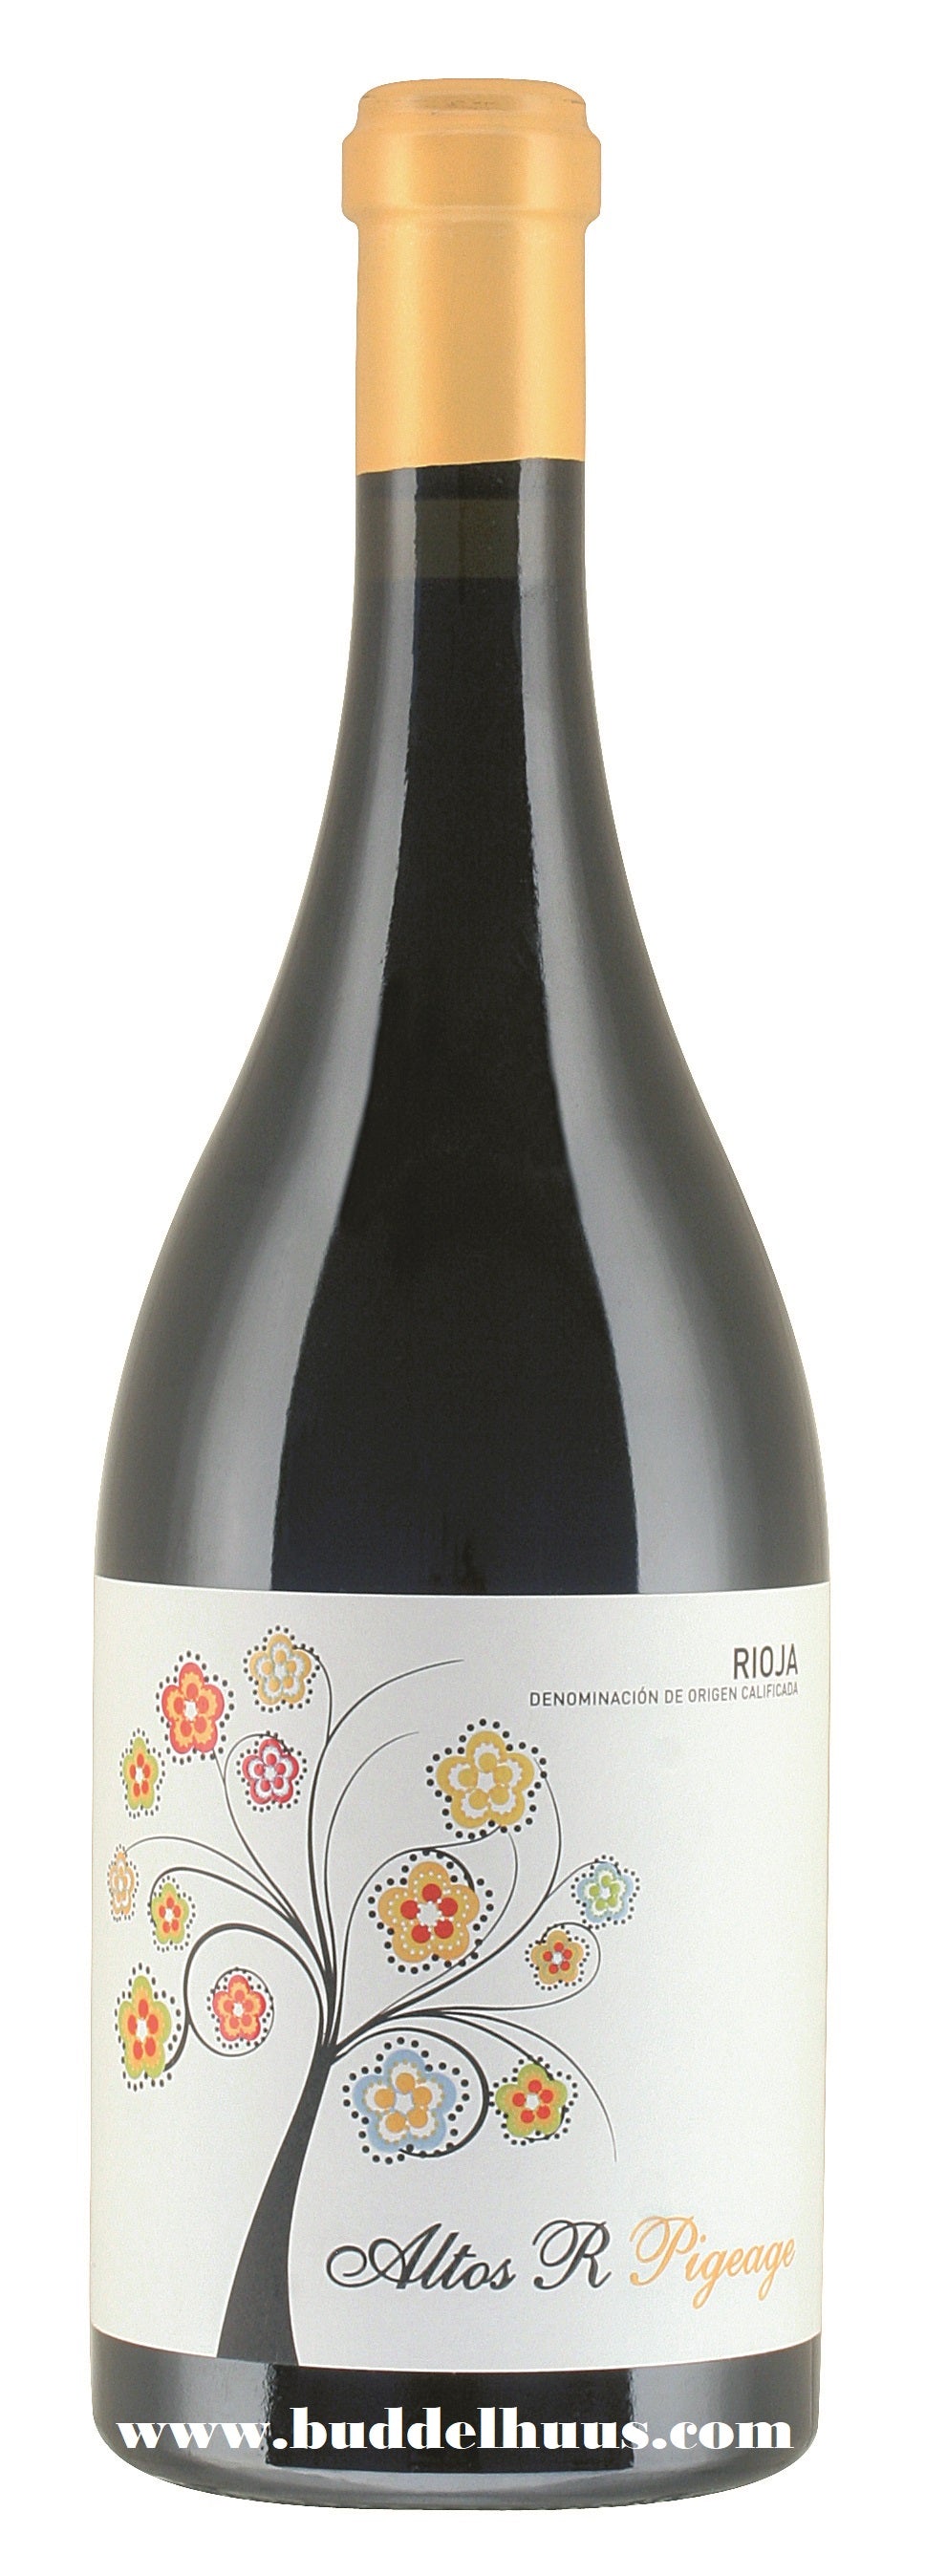 Bodega Altos de Rioja Rioja DOCa, Altos R Pigeage (2016)